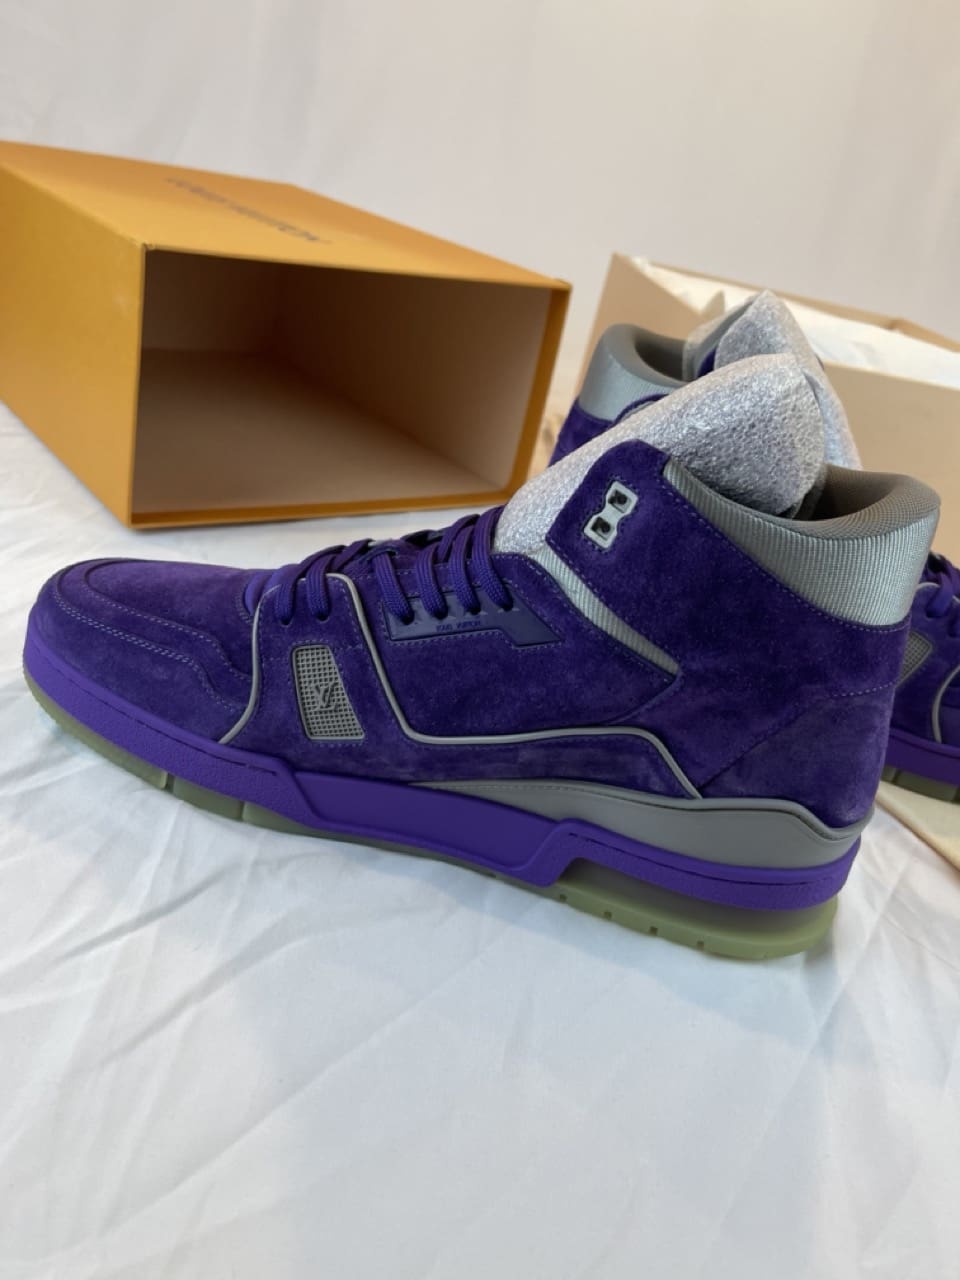 Louis Vuitton LV Trainer Sneaker Violet. Size 10.0